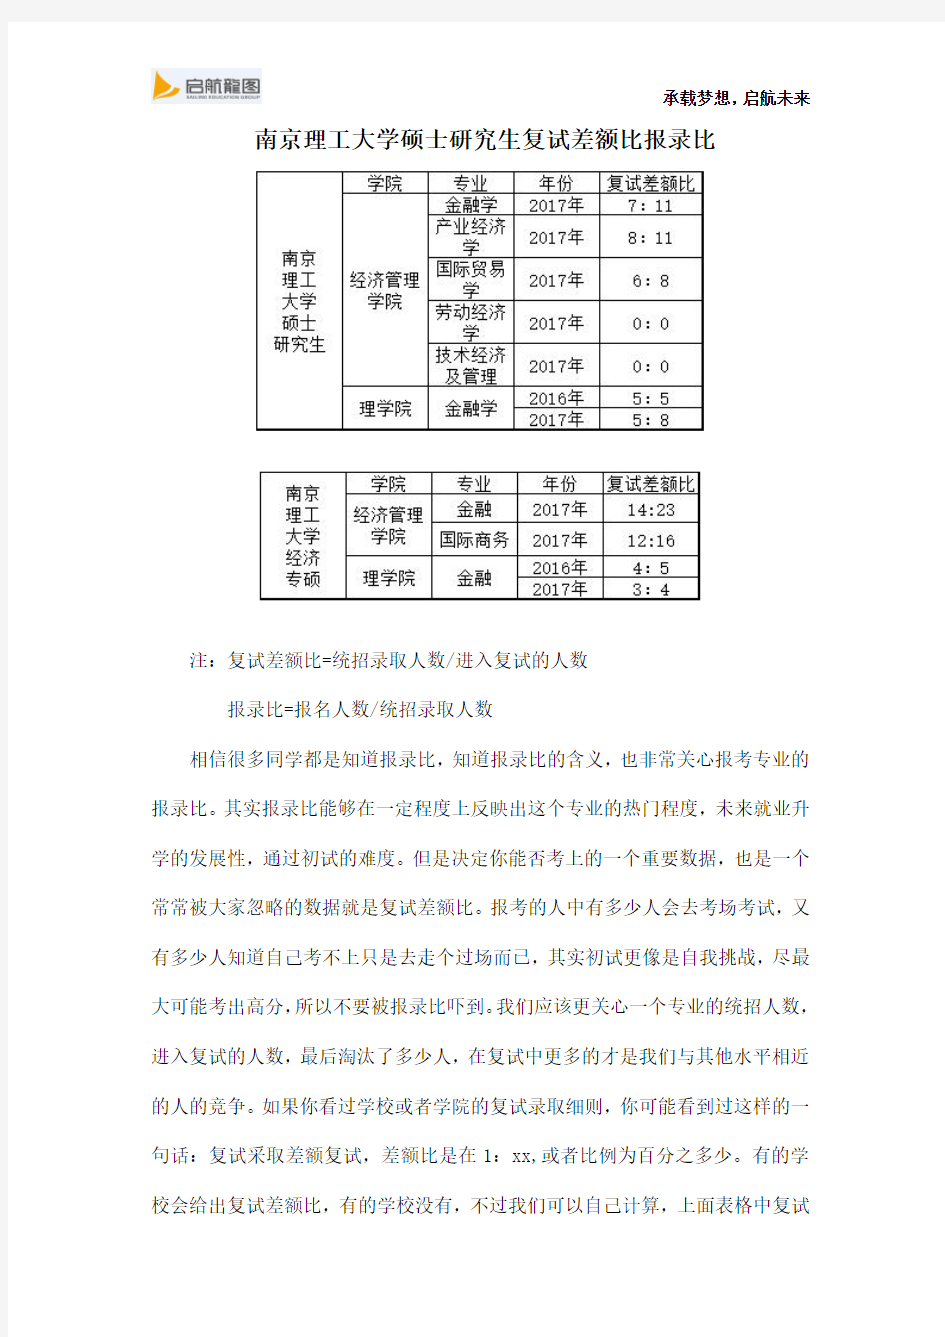 南京理工大学经济学硕士研究生考试复试差额比报录比